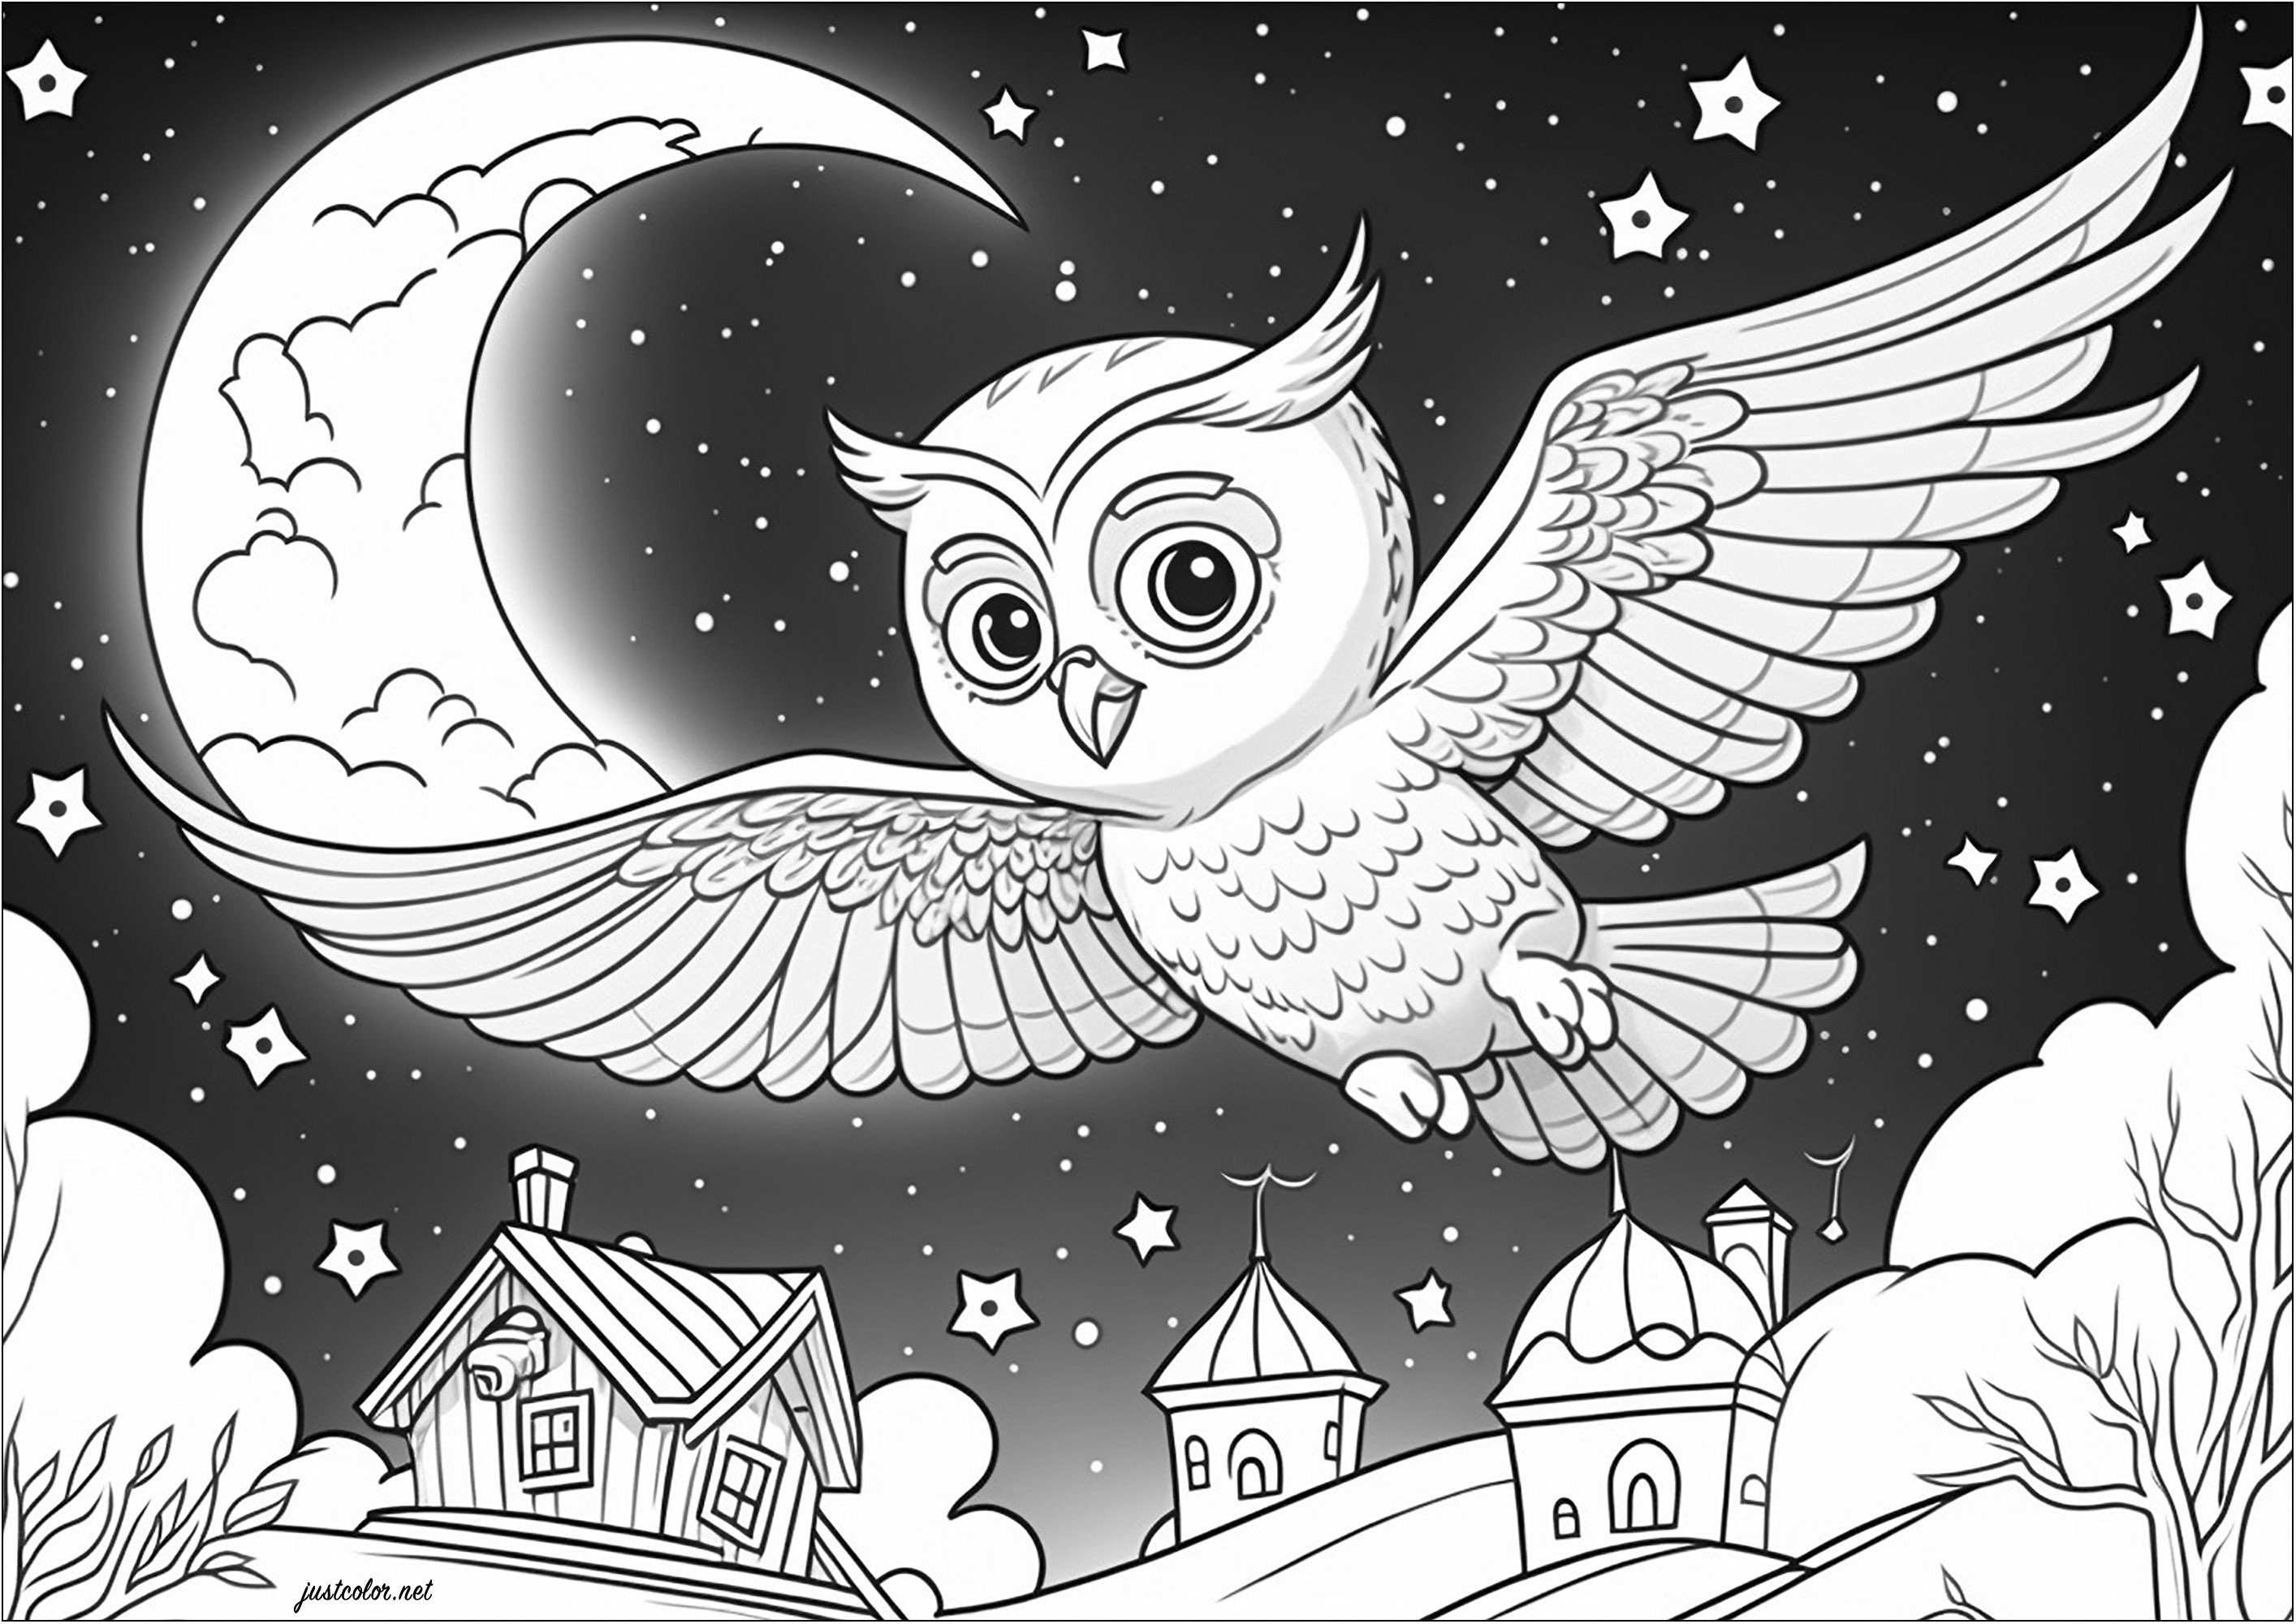 Desenhos de coruja e aldeia bonita para colorir. Esta página para colorir representa uma coruja solitária a sobrevoar uma bonita aldeia, sob um céu estrelado e uma grande lua.